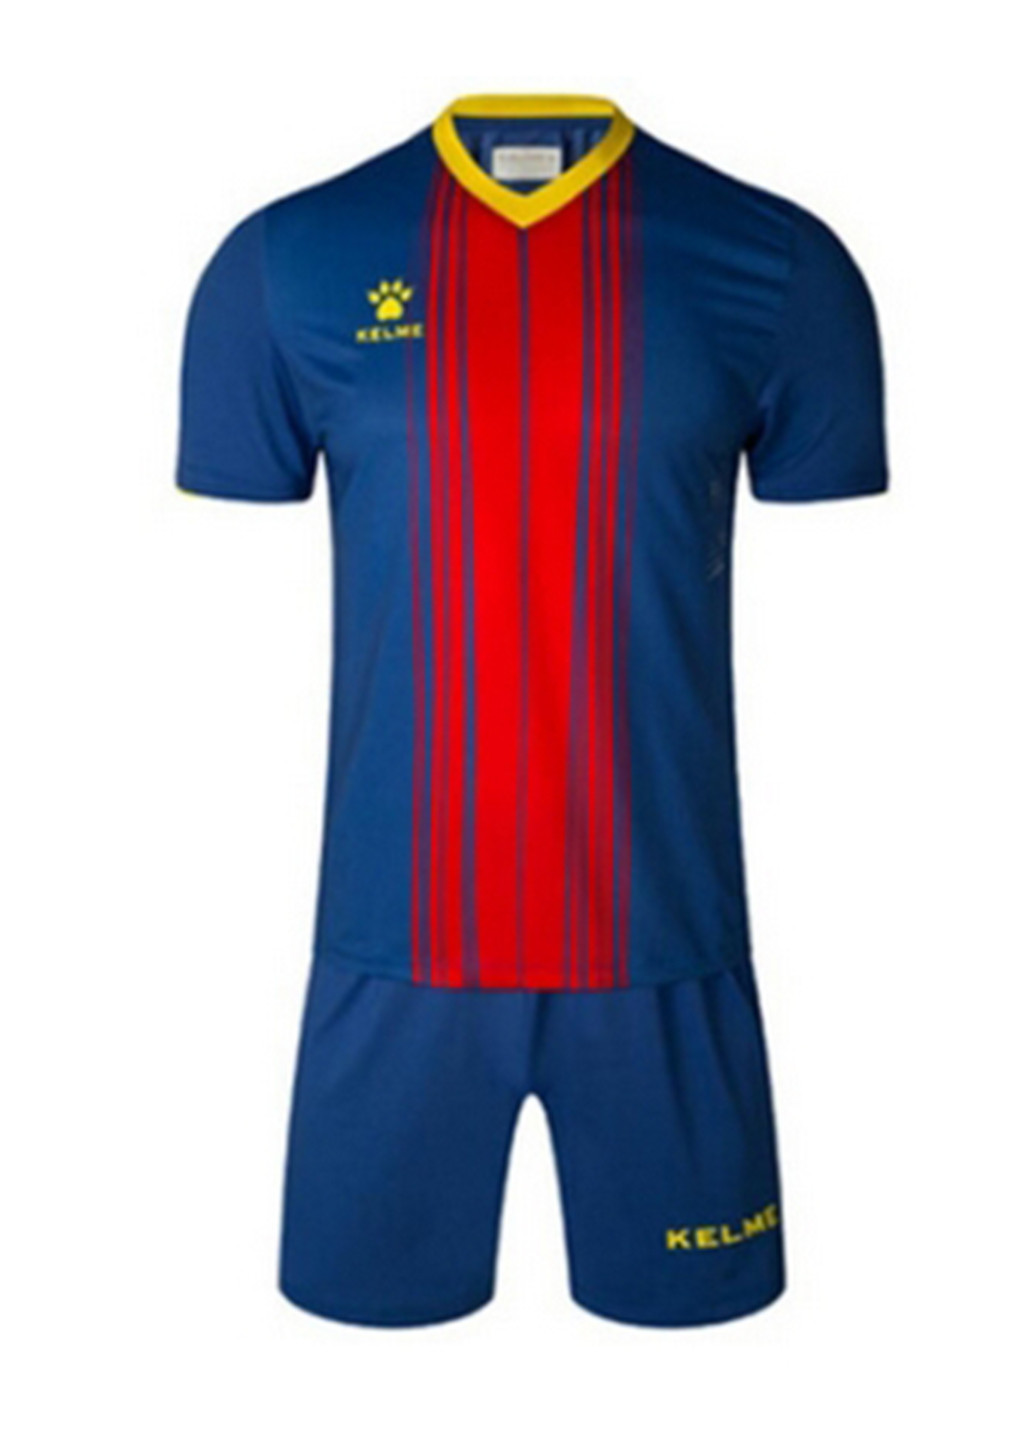 Синій демісезонний комплект футбольної форми barcelona т.синьо-червоний к/р Kelme